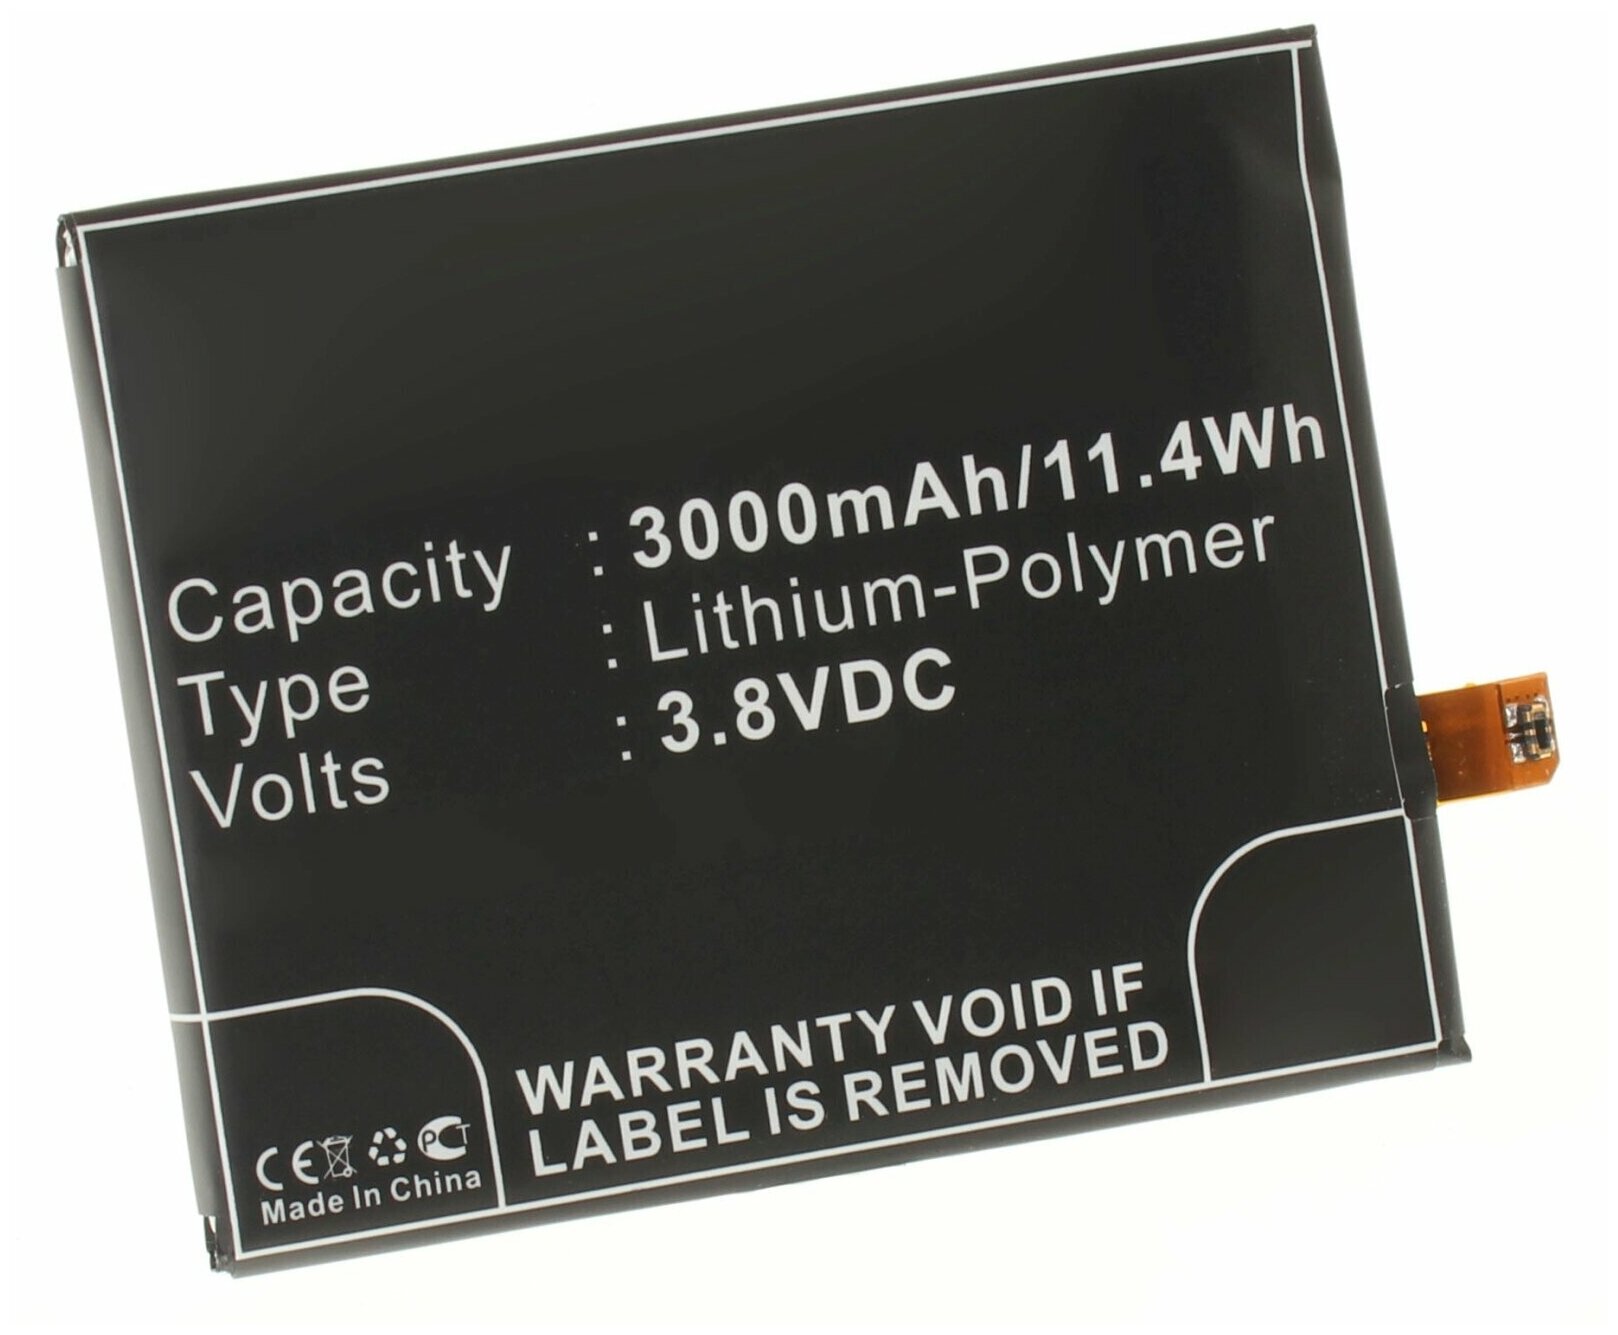 Аккумулятор iBatt iB-U1-M578 3000mAh для LG D802 D800 D802 G2 D801 D805 D803 LS980 Optimus G2 D801 G2 DS1203 VS980 D800 G2